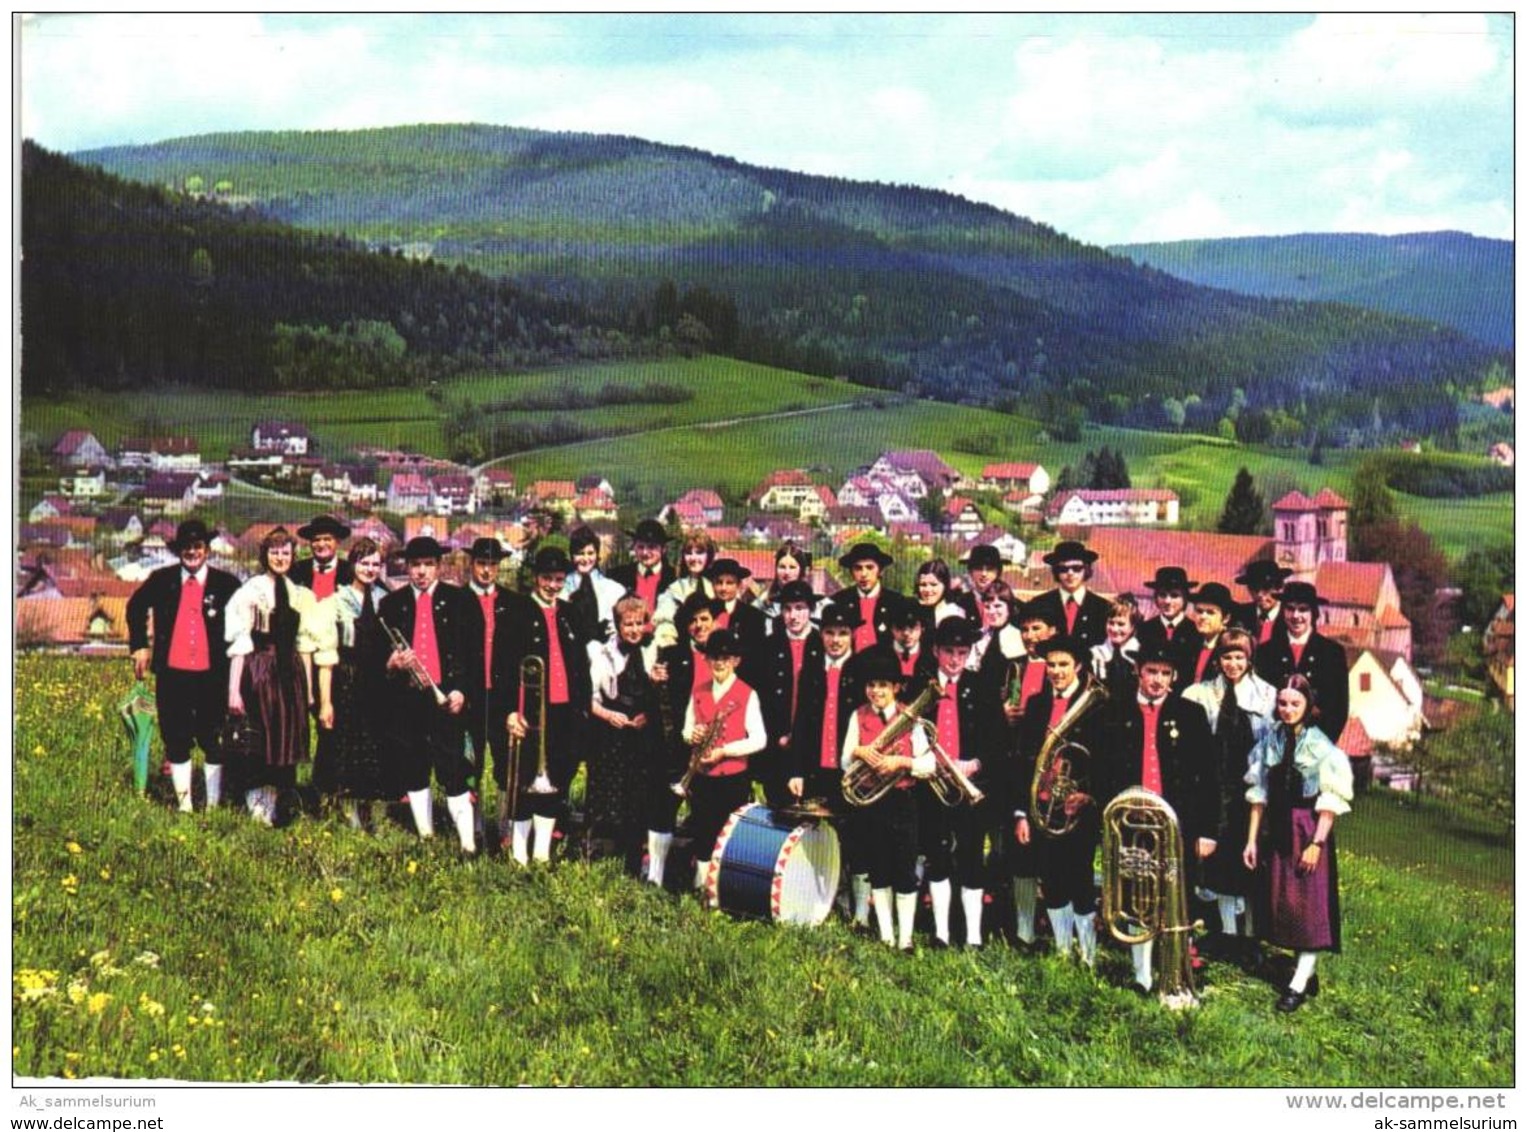 Klosterreichenbach / Baiersbronn (D-A224) - Baiersbronn